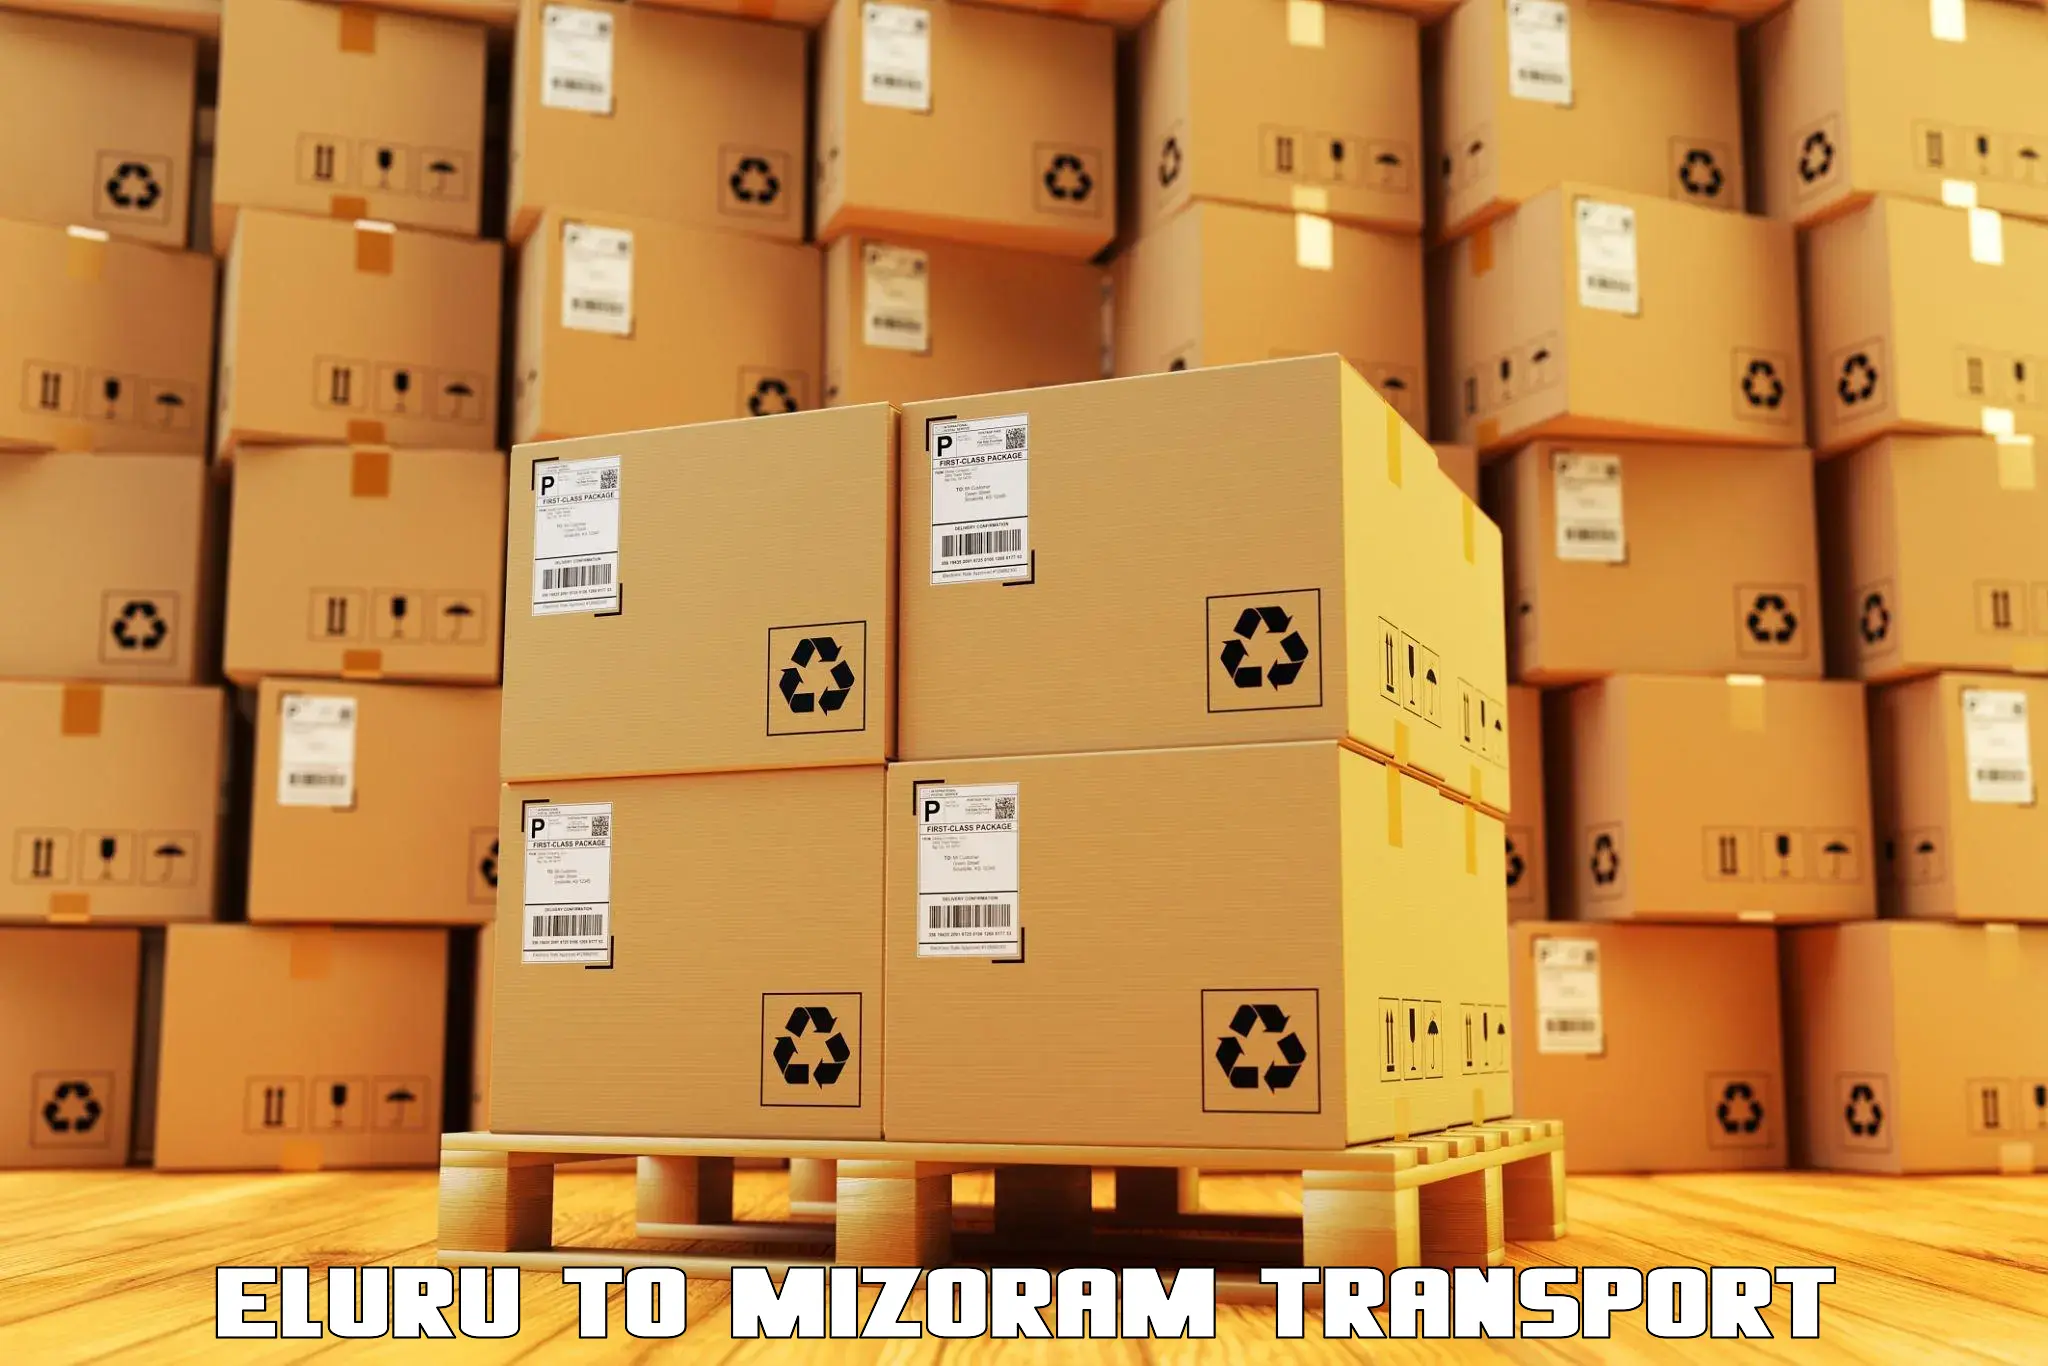 Best transport services in India Eluru to Mizoram